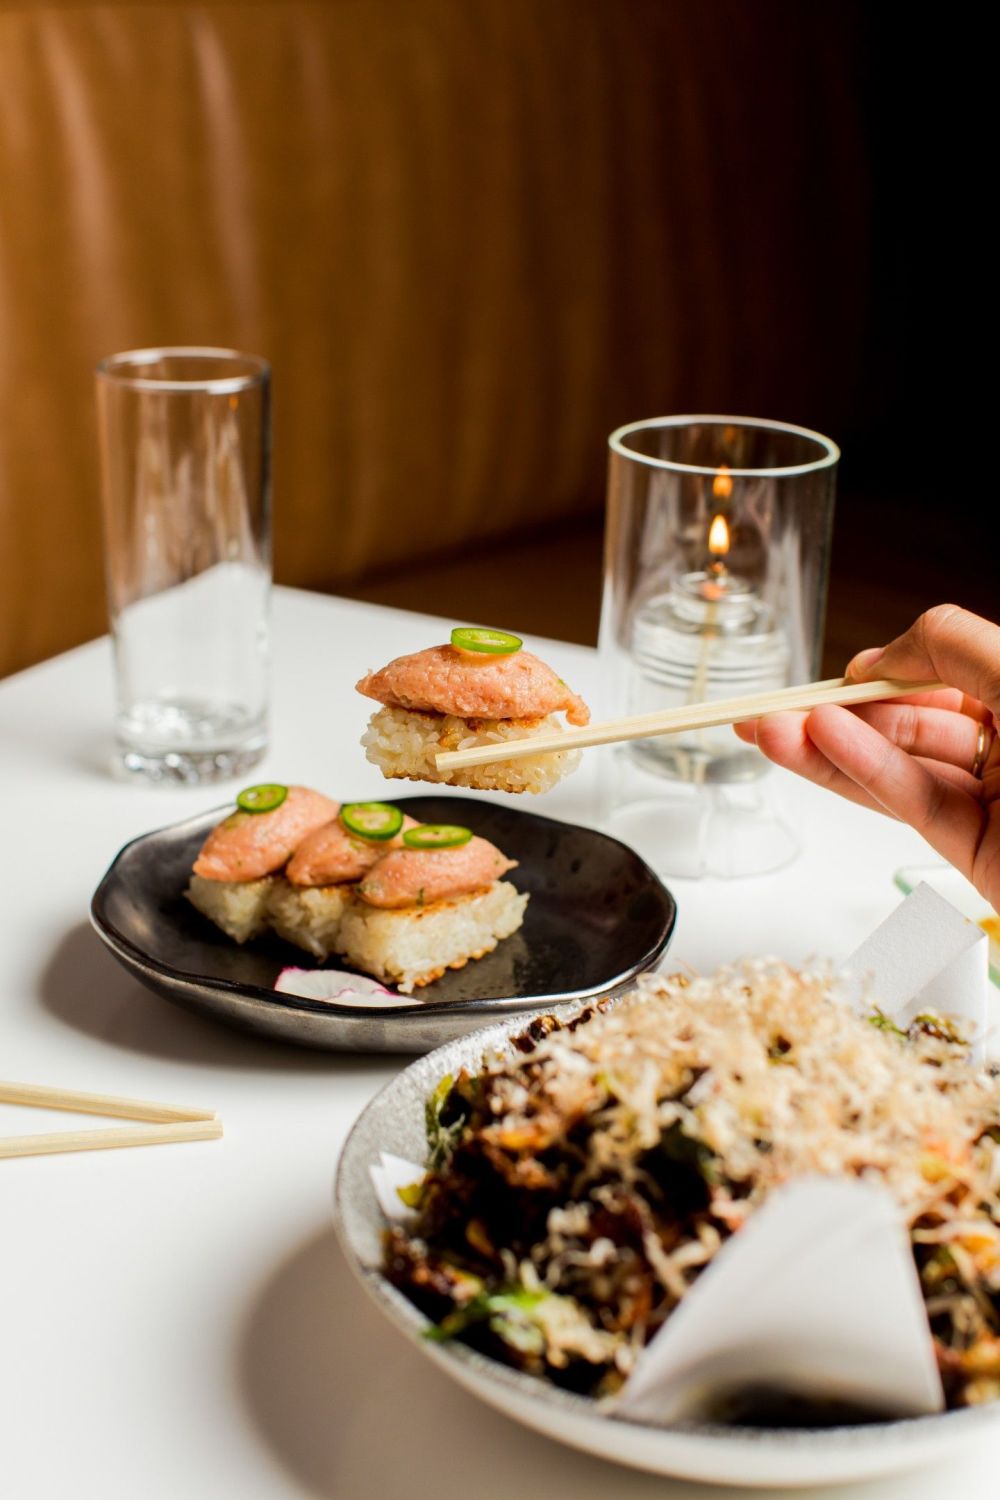 上地シェフは、特製カクテル、ユニークなロールパン、素晴らしい寿司と刺身の盛り合わせで、日本の味をアメリカ人の味覚に巧みに翻訳します。